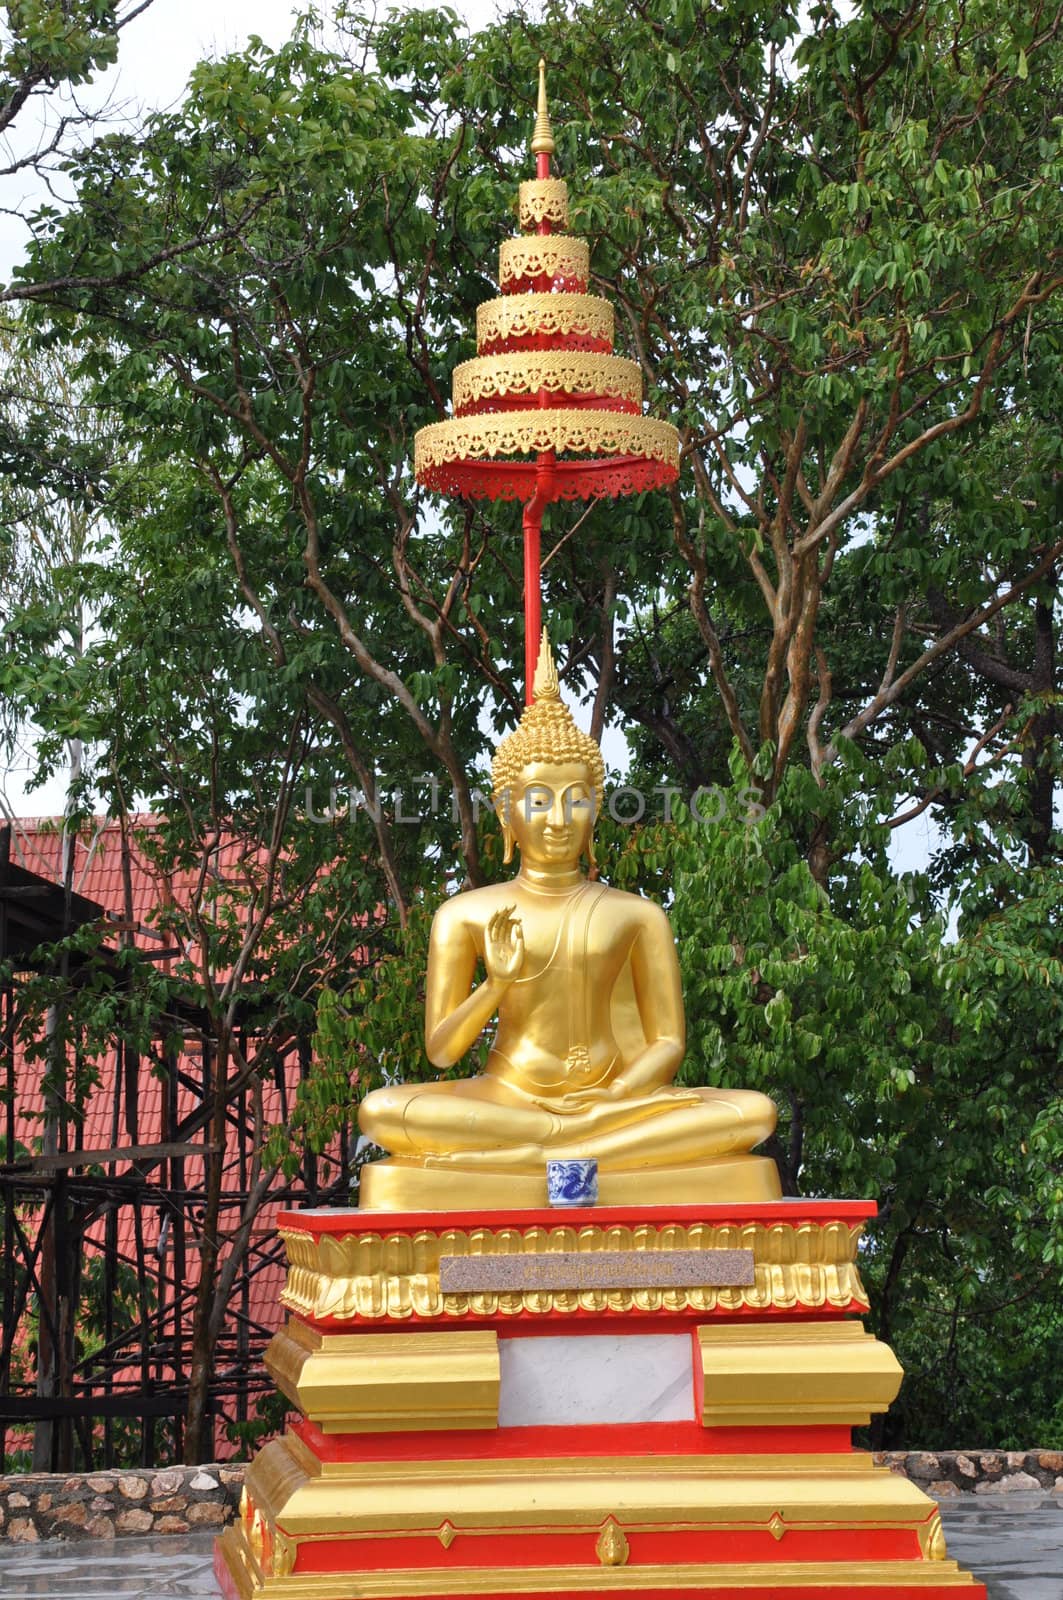 Big Buddha site in Pattaya, Thailand by sainaniritu